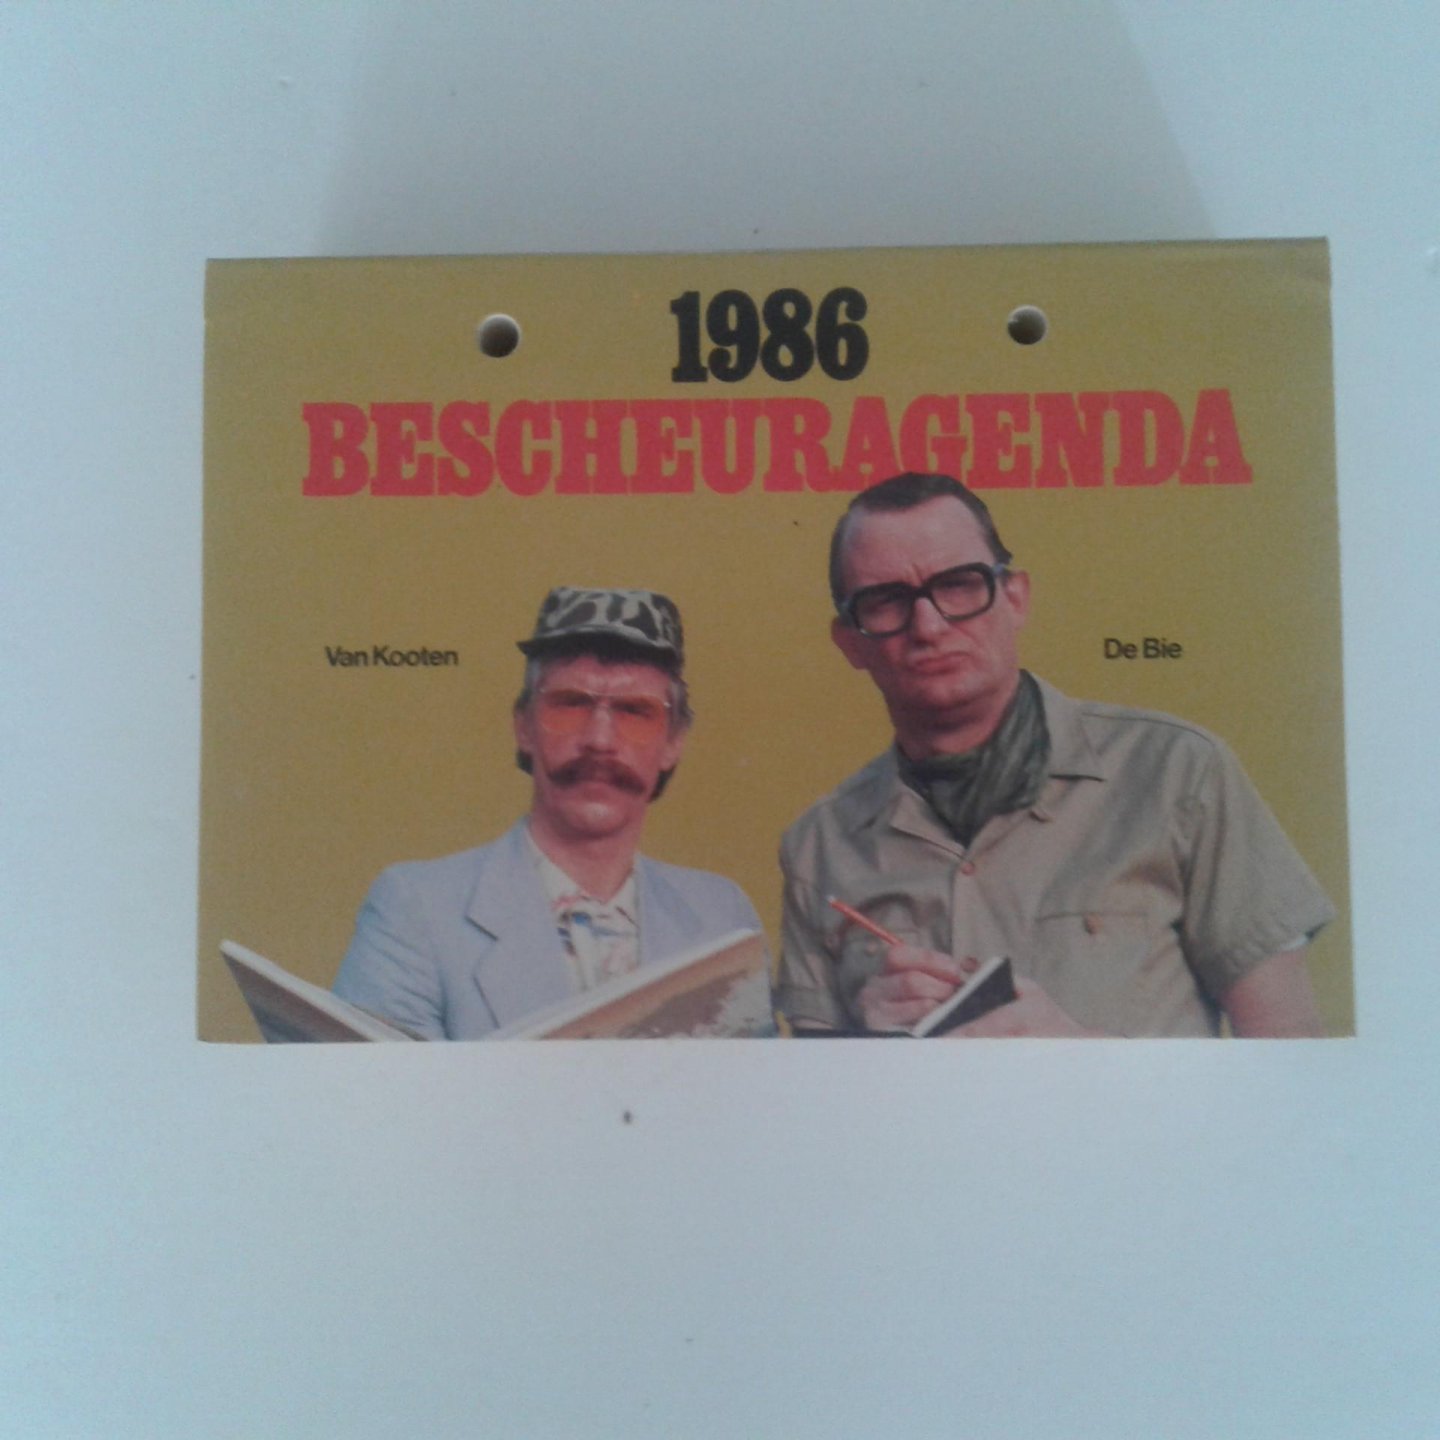  - Bescheuragenda 1986 van Kooten & de Bie